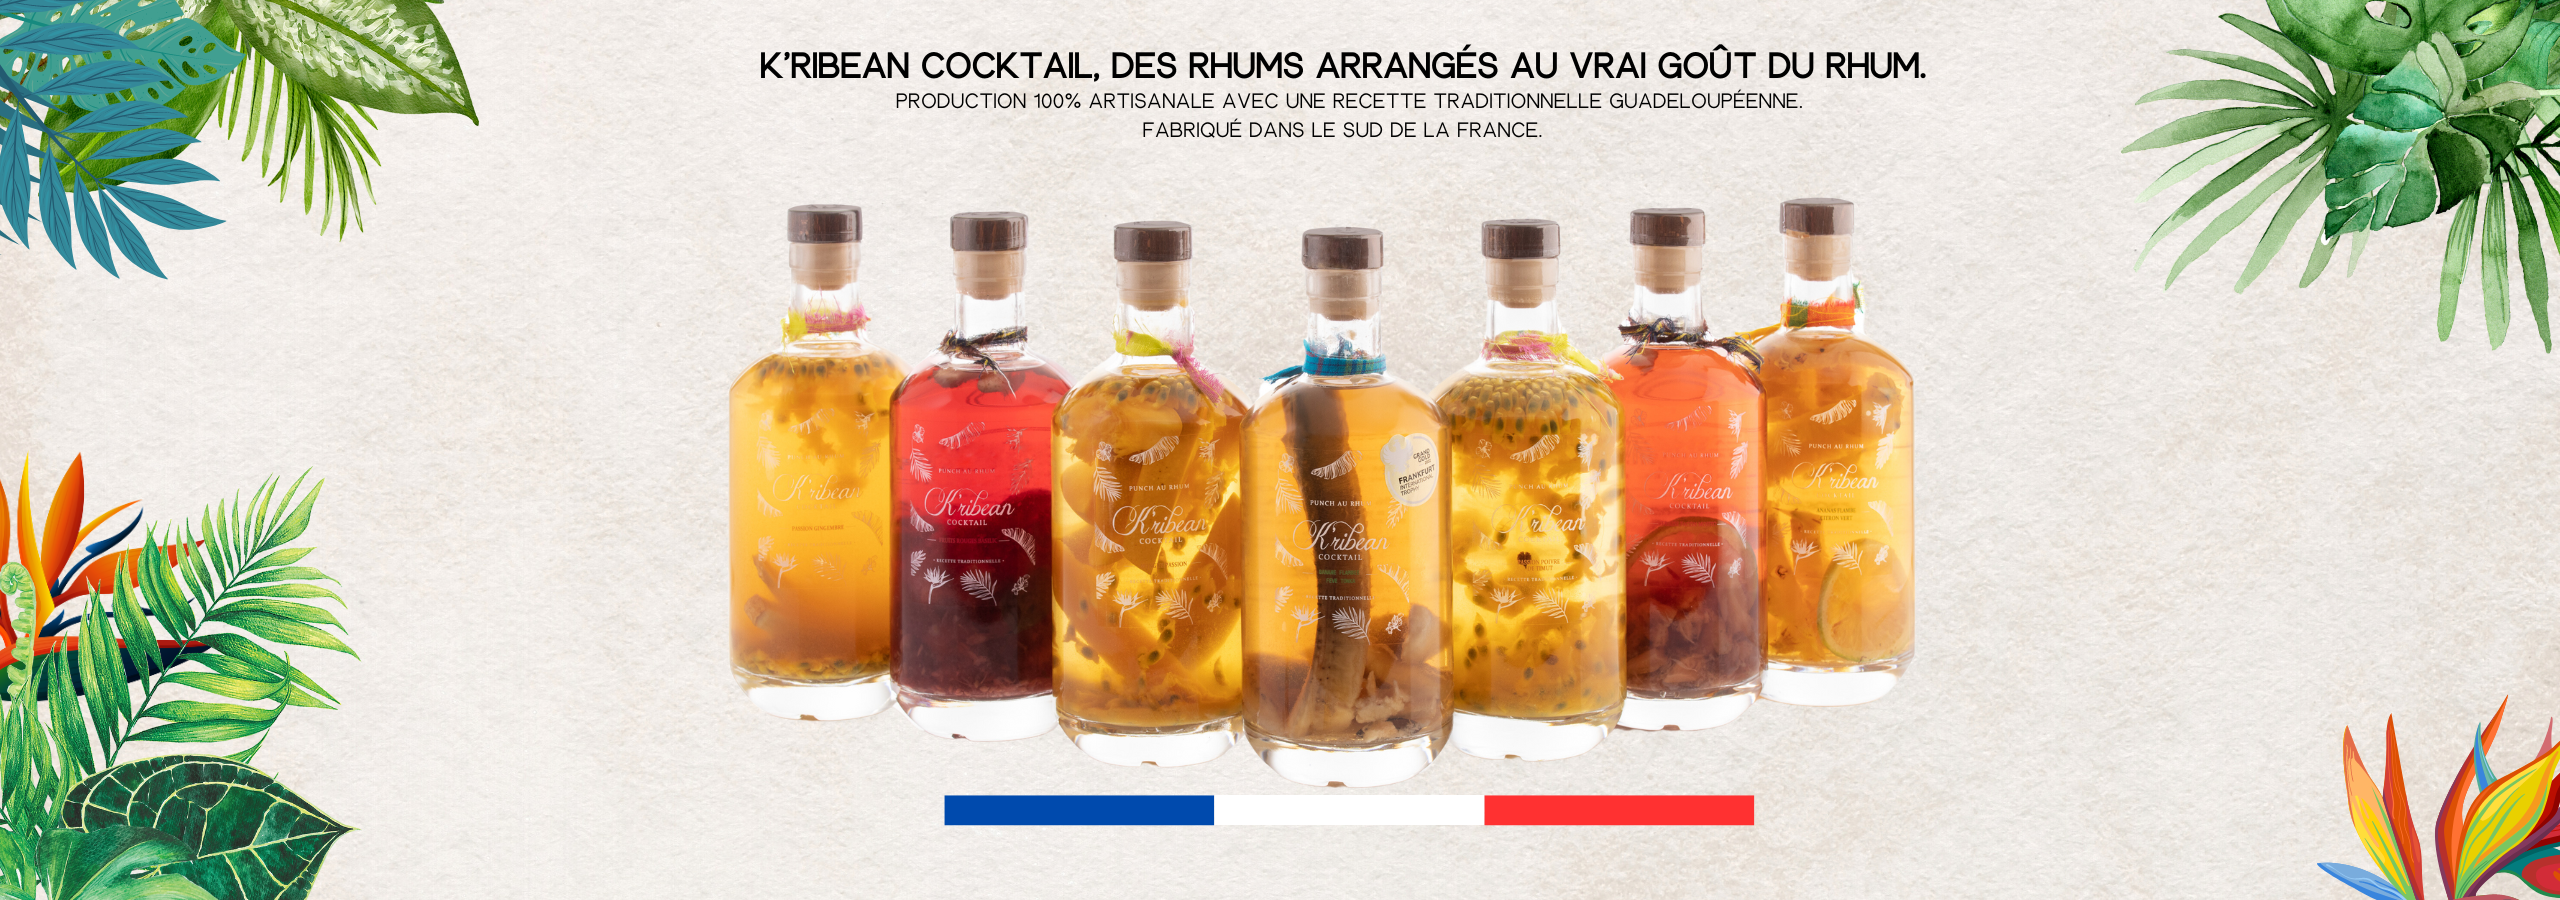 Gamme de rhums arrangés K'ribean Cocktail, produits artisanalement dans le sud de la france depuis 2018. 